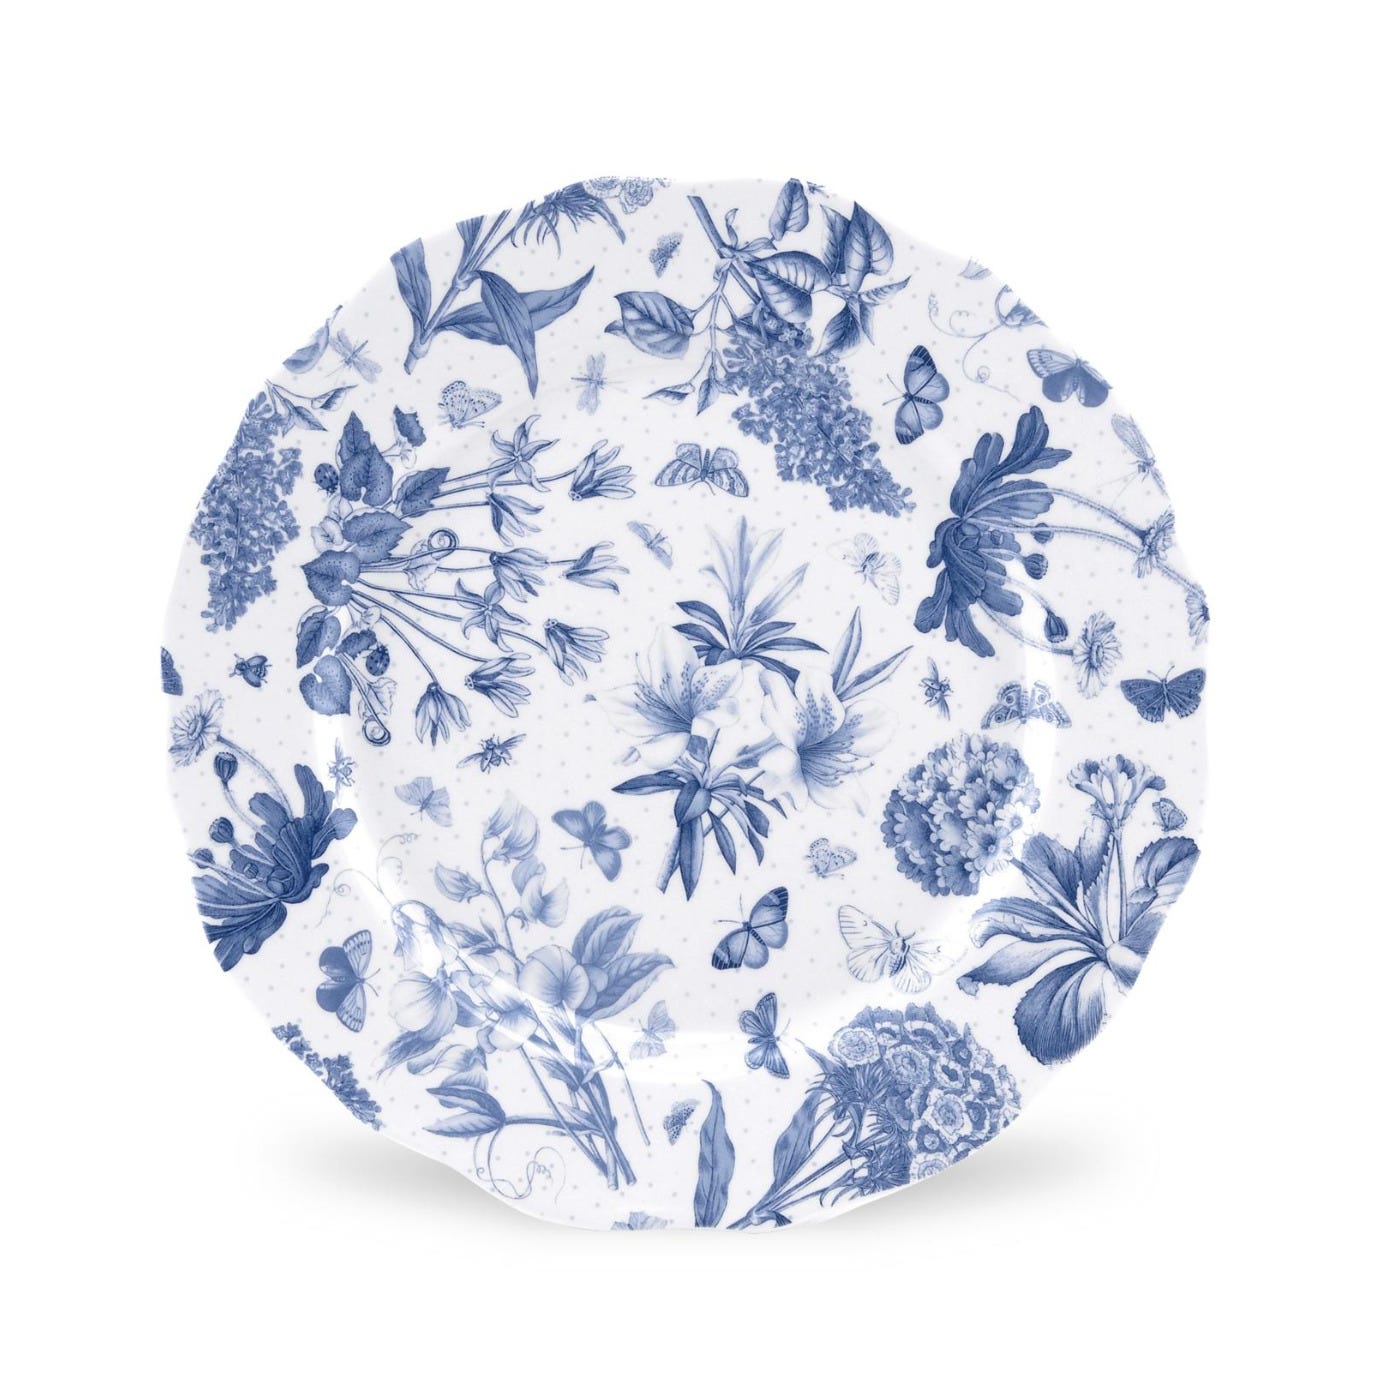 Portmeirion Botanic Blue 10.75 inch Dinner Plate set of 4